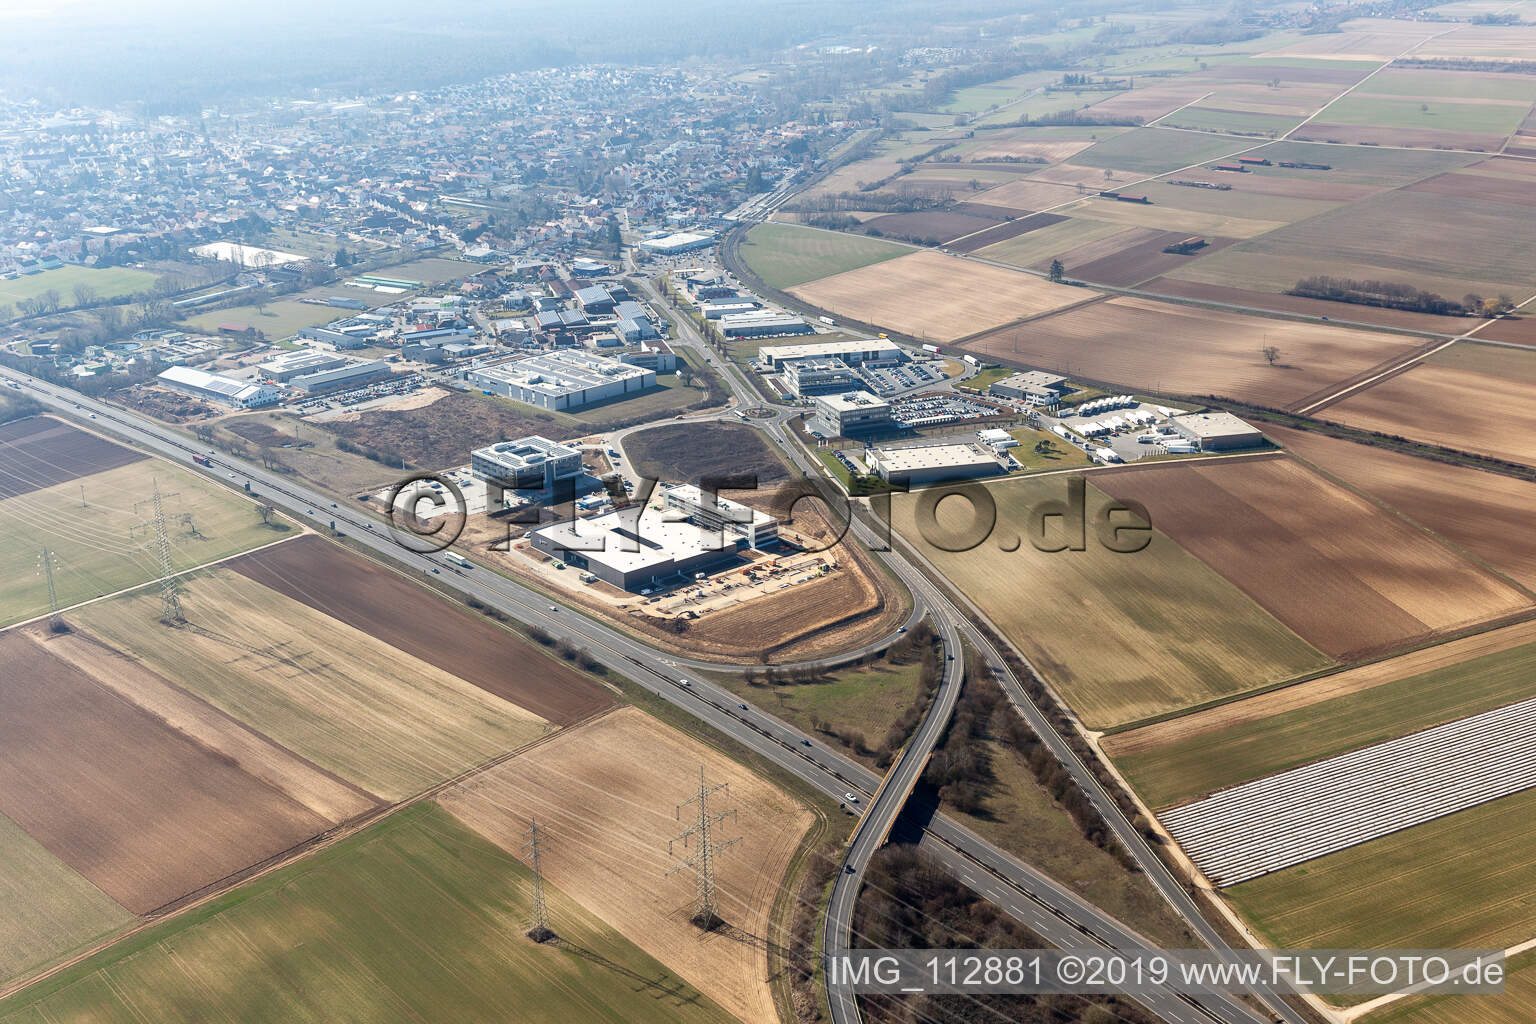 Vue aérienne de Zone industrielle du Nord à Rülzheim dans le département Rhénanie-Palatinat, Allemagne